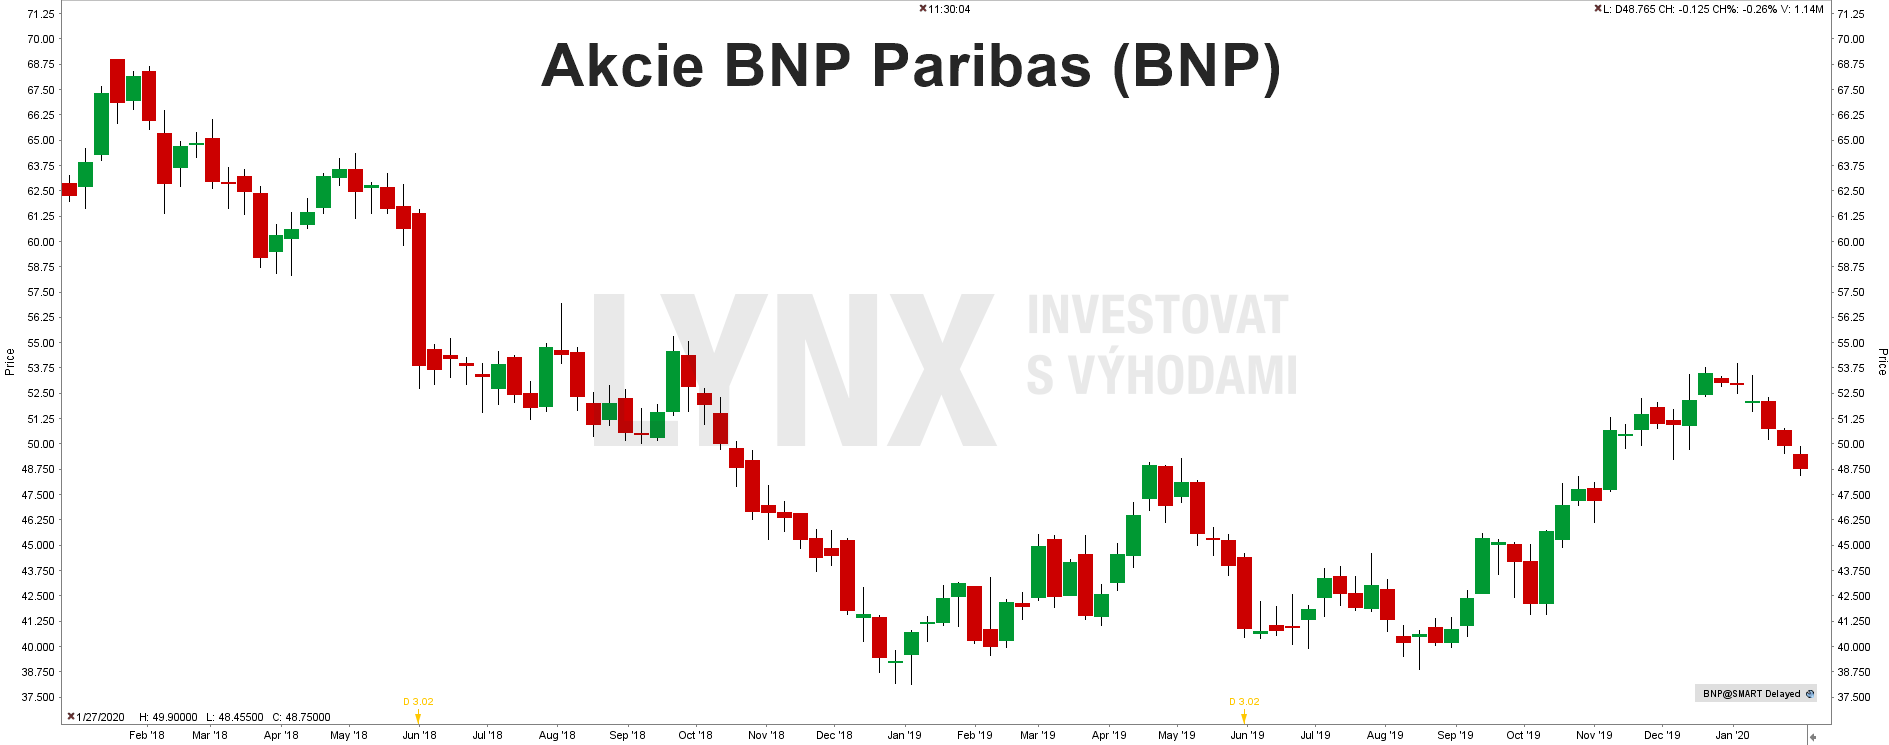 Akcie BNP Paribas